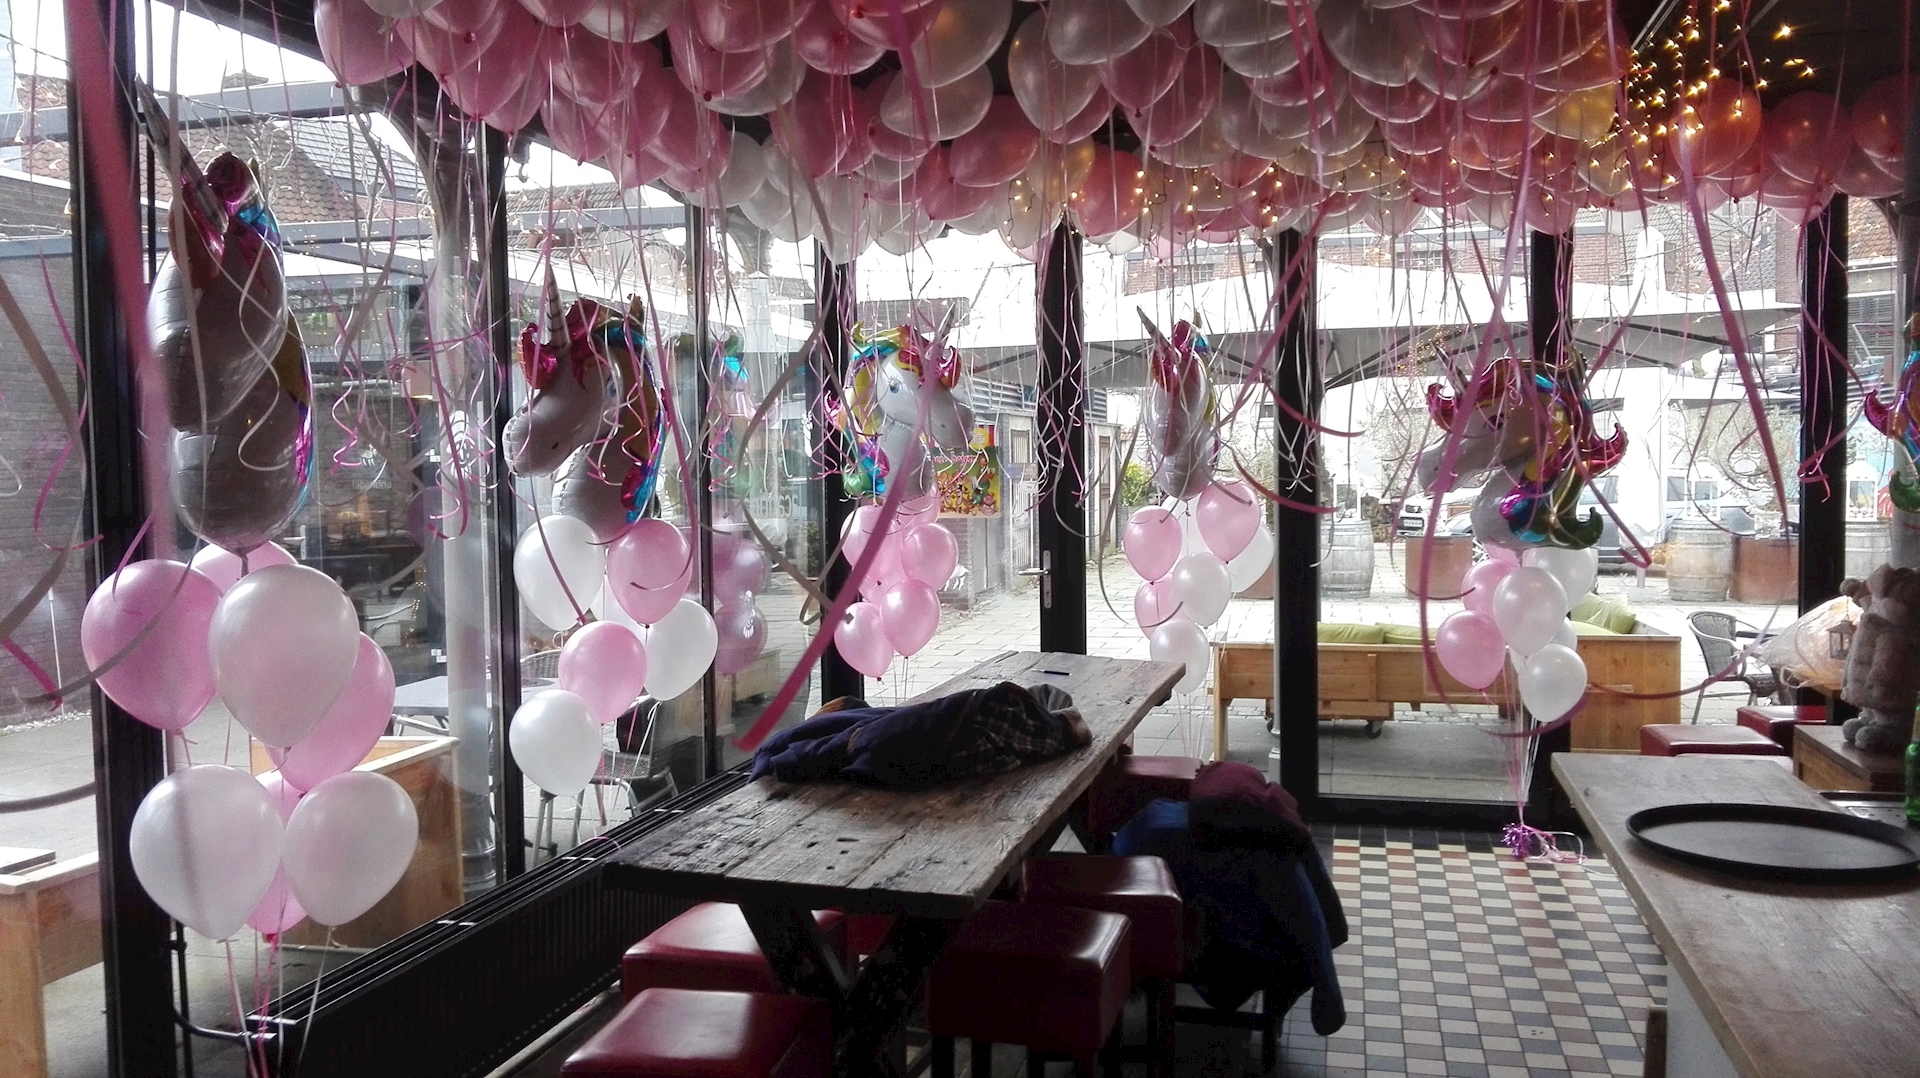 Geef rechten wijk lijn ballon decoratie door Ballonnenpartners | Ballonnenpartners